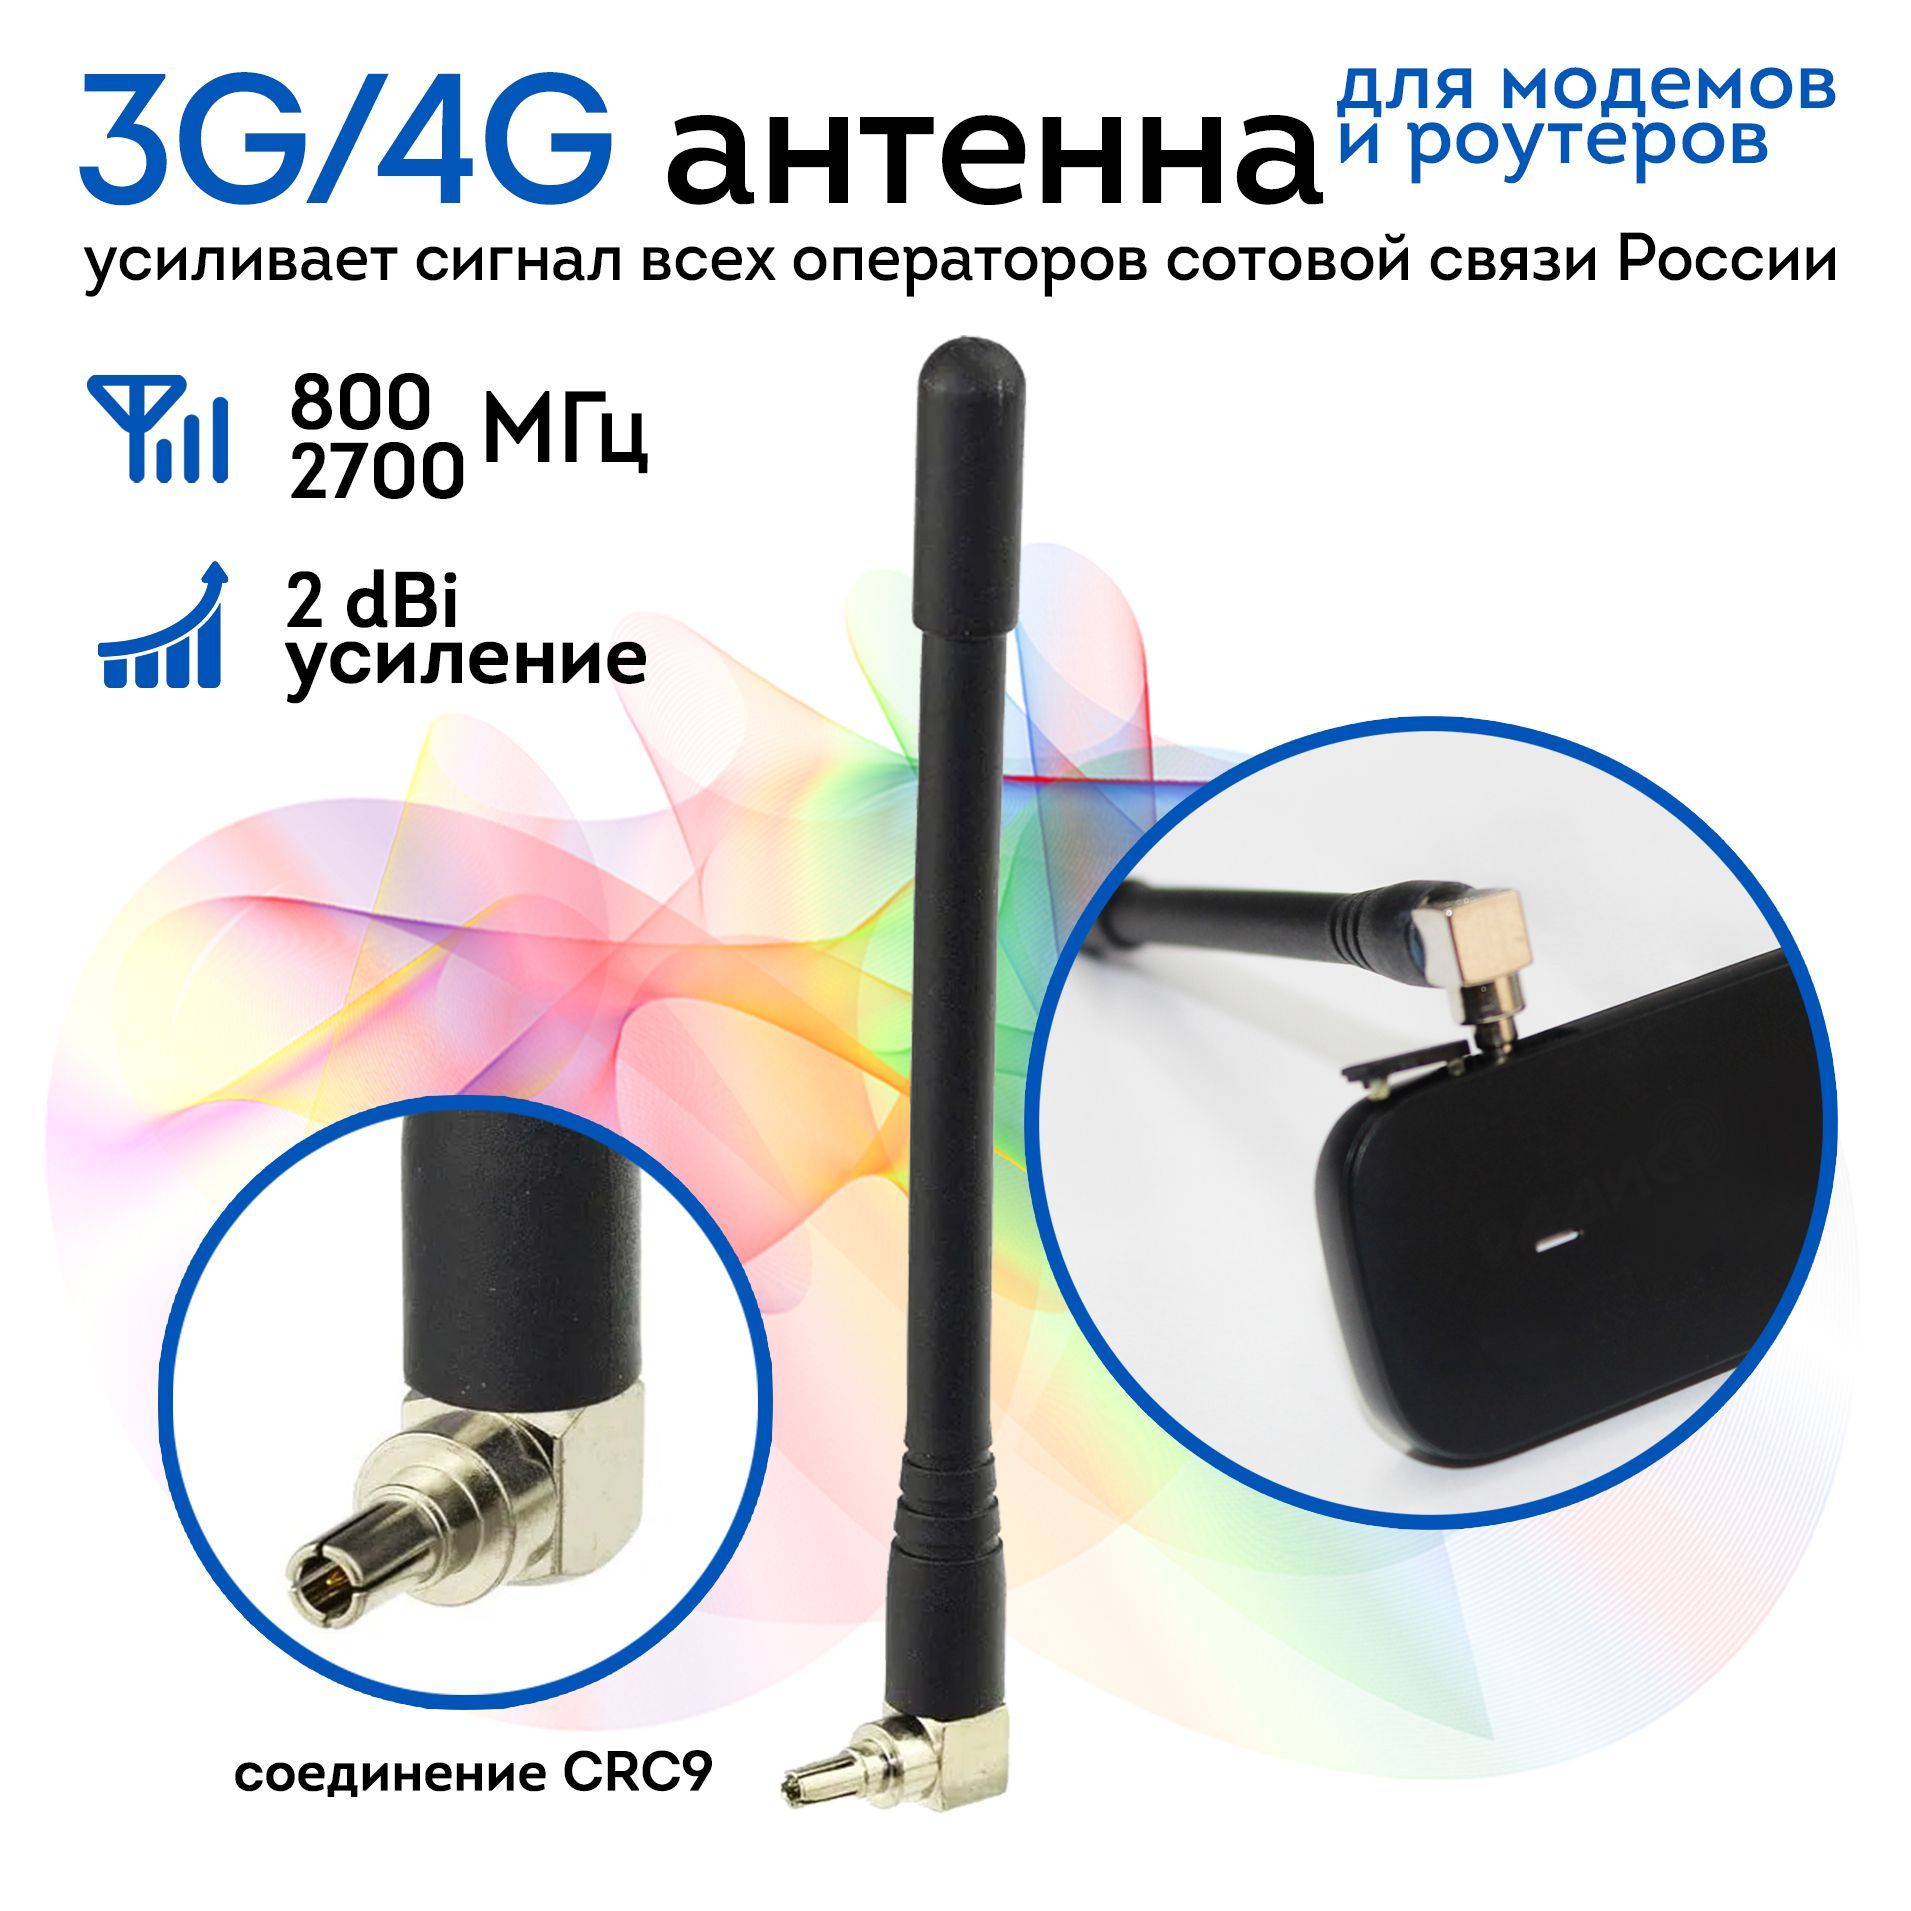 Антенный переходник для подключения 3G/4G-USB модема к внешней антенне.